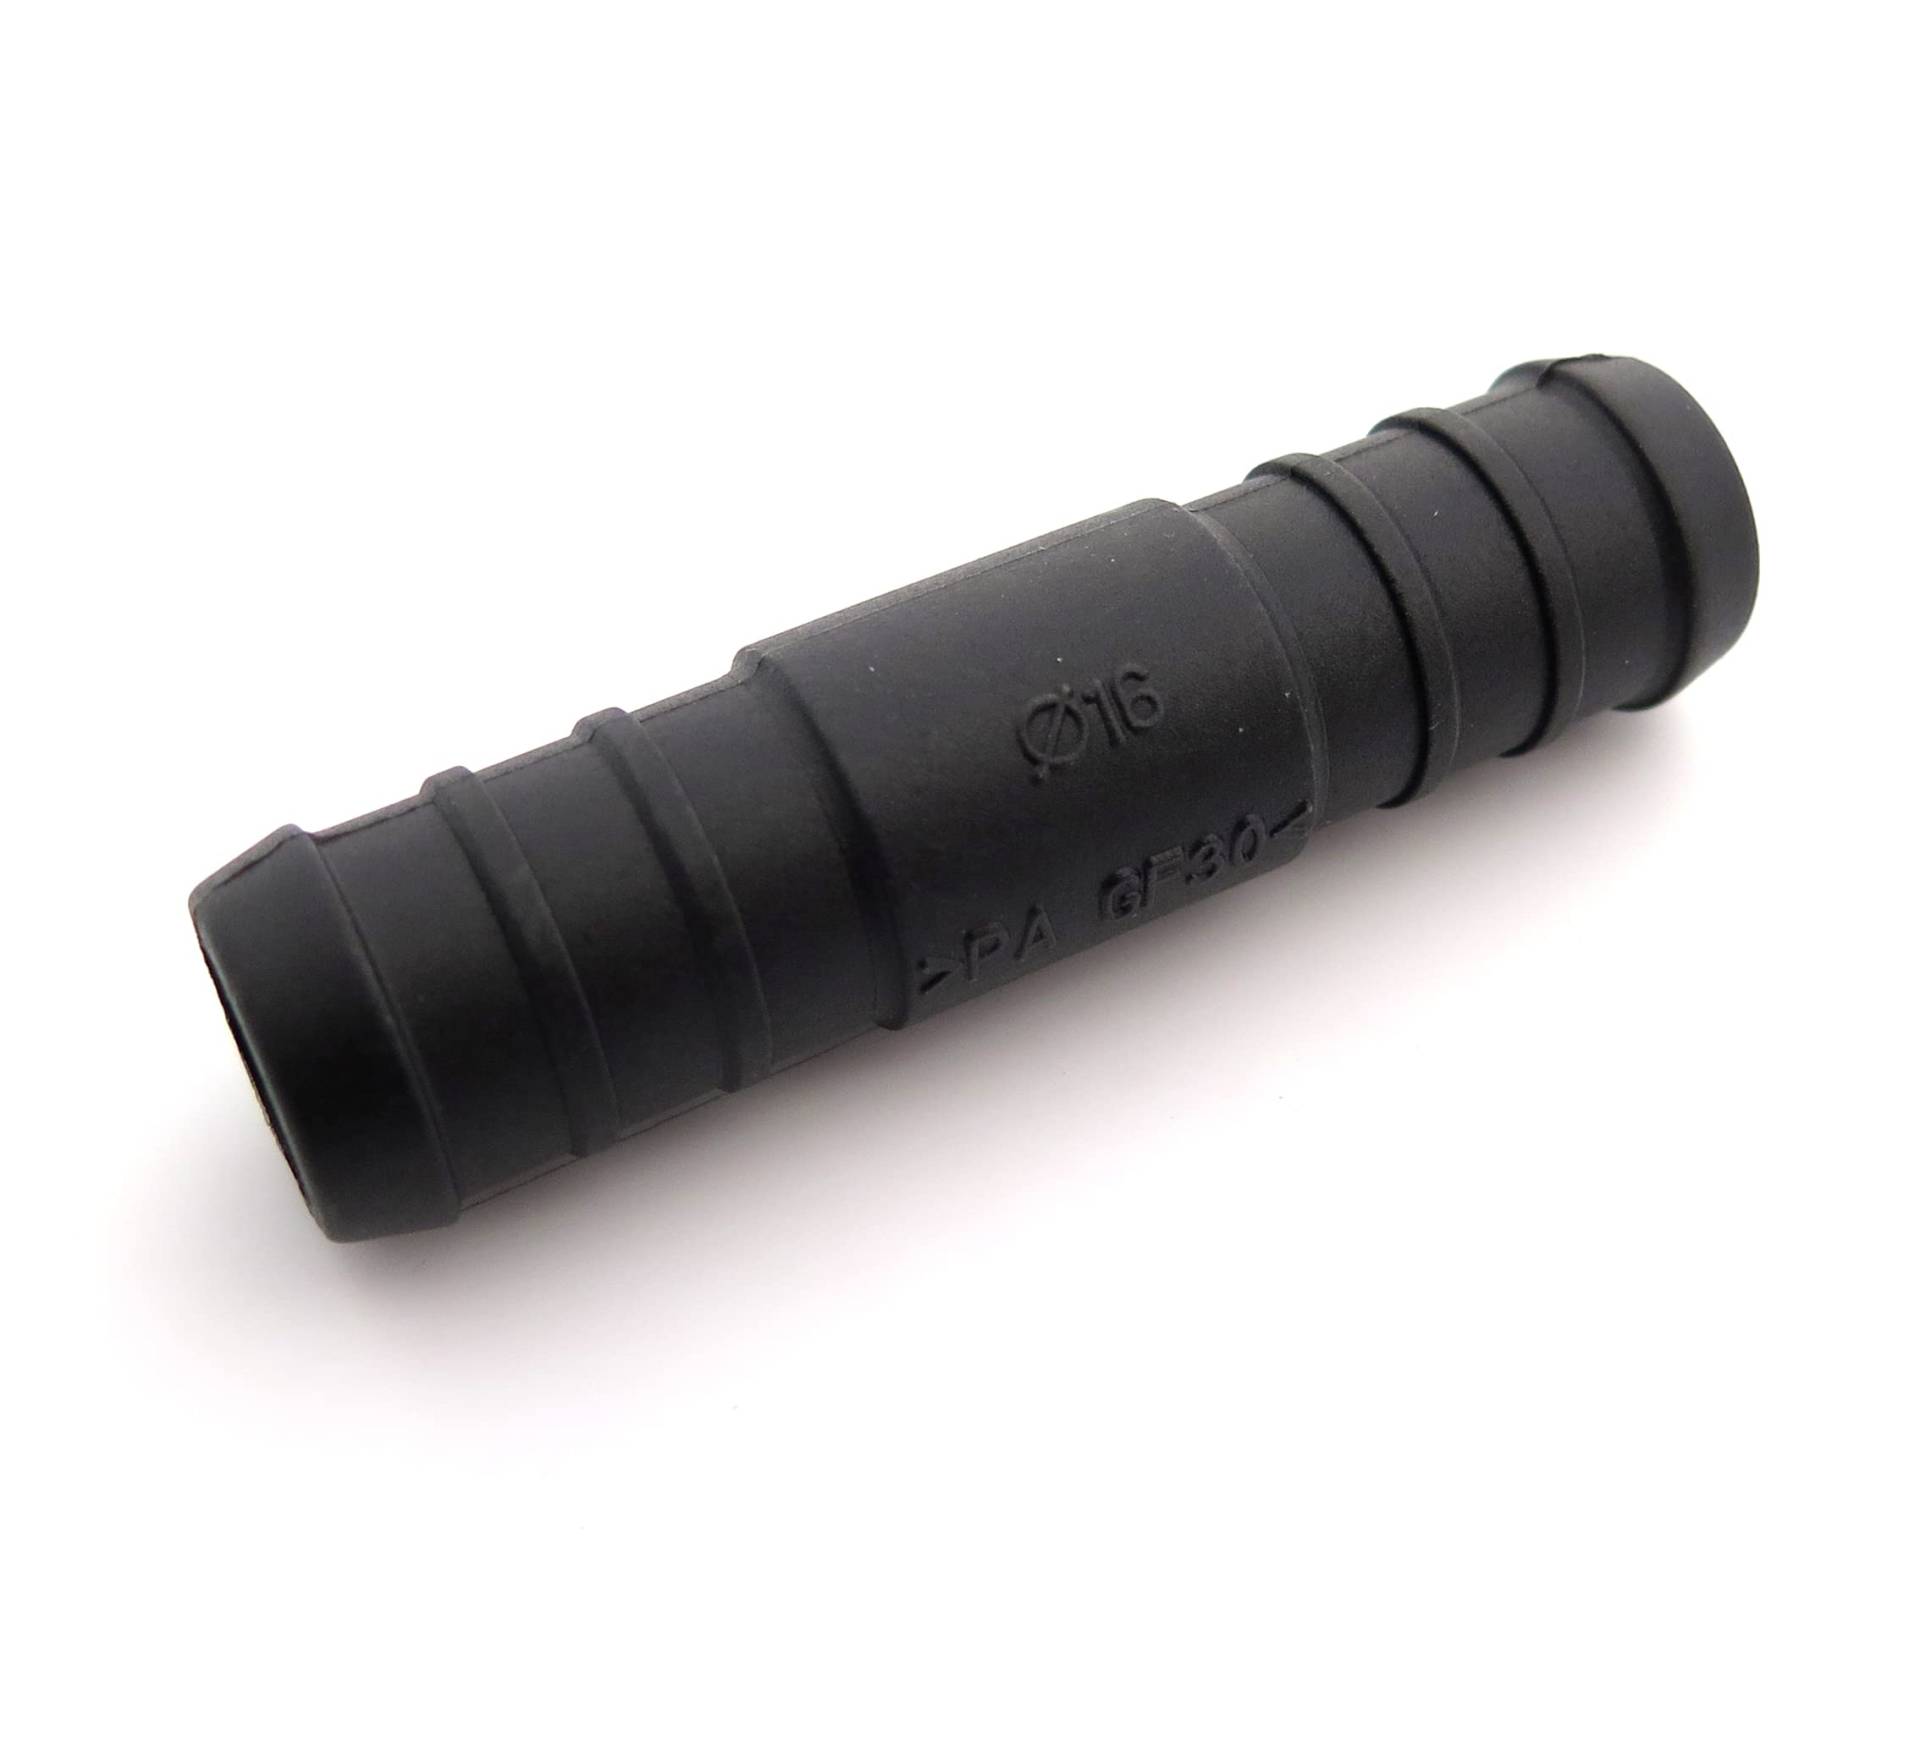 Schlauchverbinder Kunststoff Gerade x2 - Außendurchmesser 16mm - Für Schläuchen von Schlauchverbinder Kunststoff